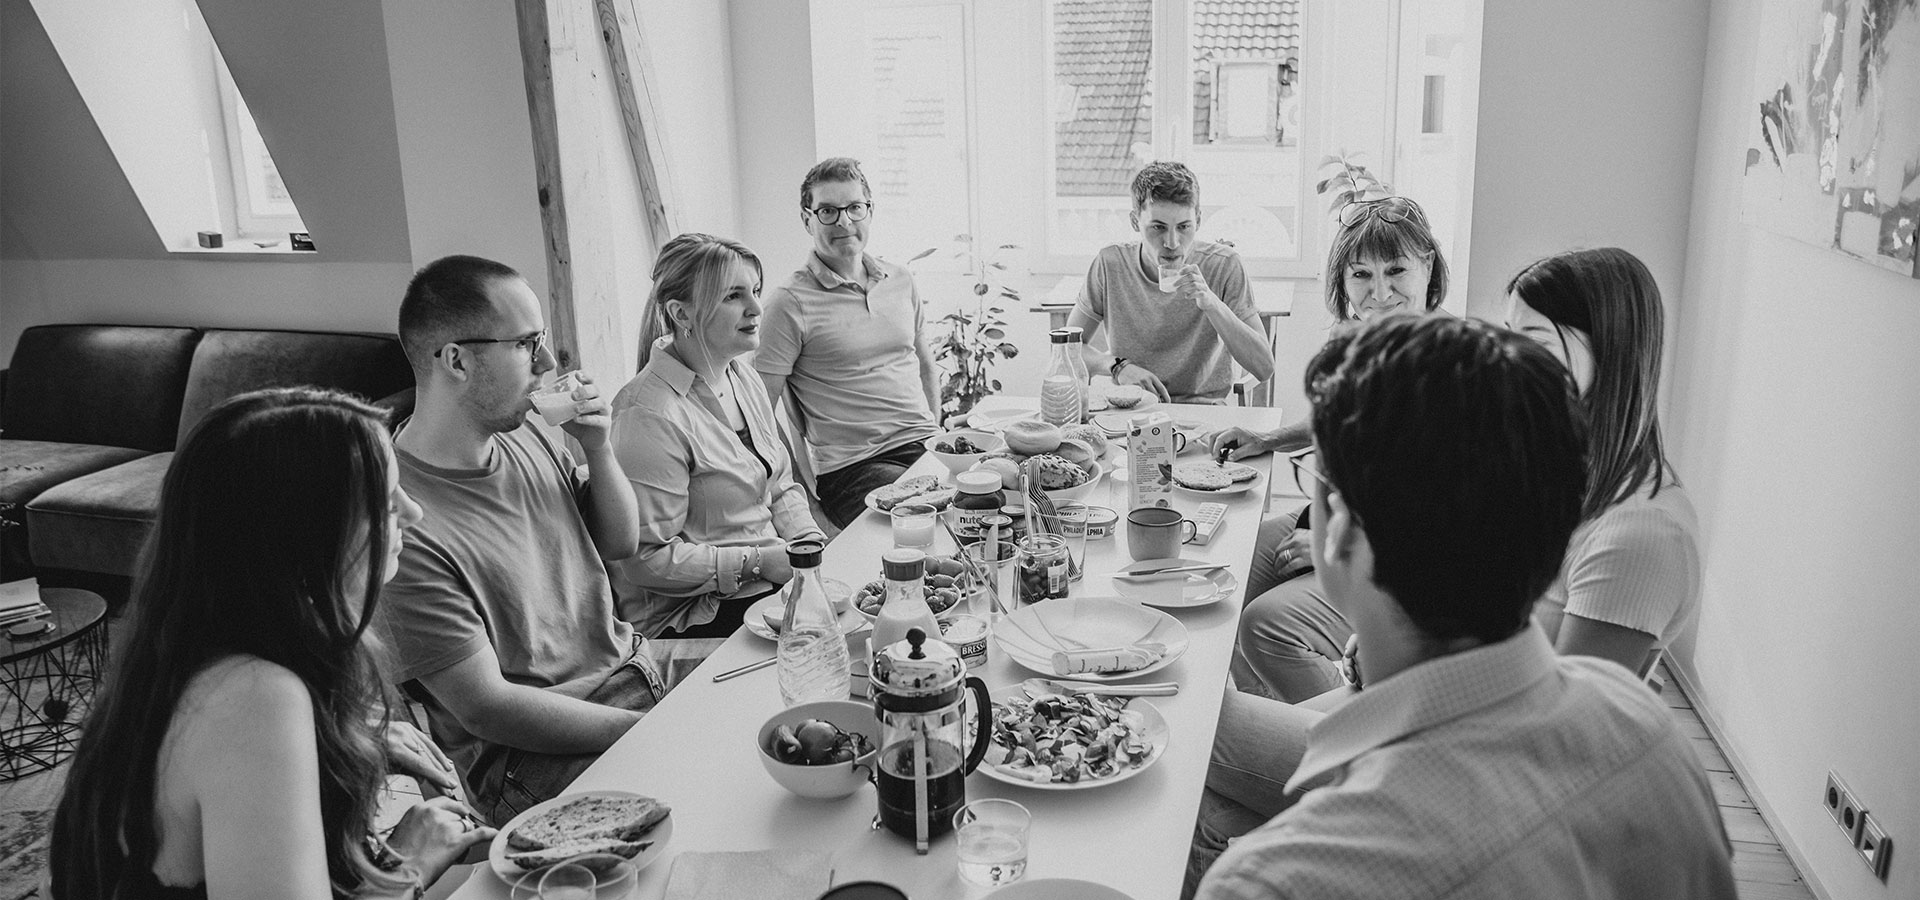 Die Mitarbeiter des KoKollektivs frühstücken zusammen an einem Tisch